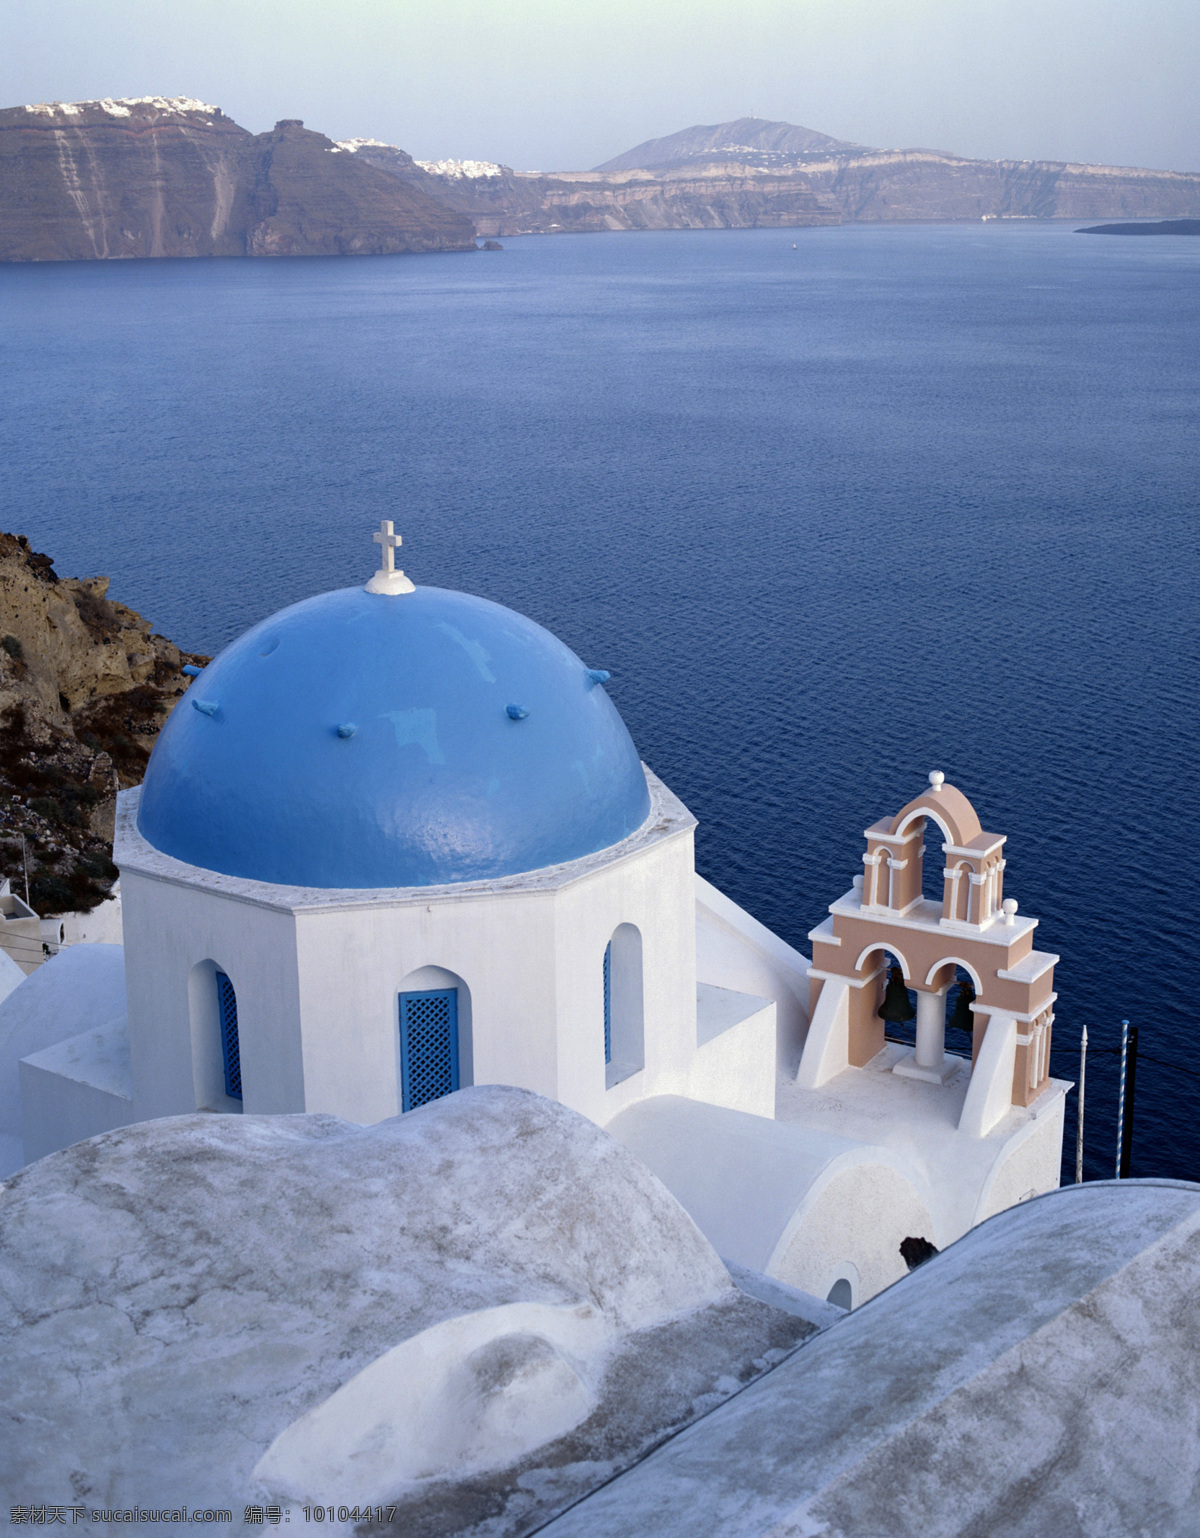 爱琴海 悬崖边 依山傍海 层叠分布 白屋 蓝窗 东正教 十字圆顶教堂 风景名胜 自然景观